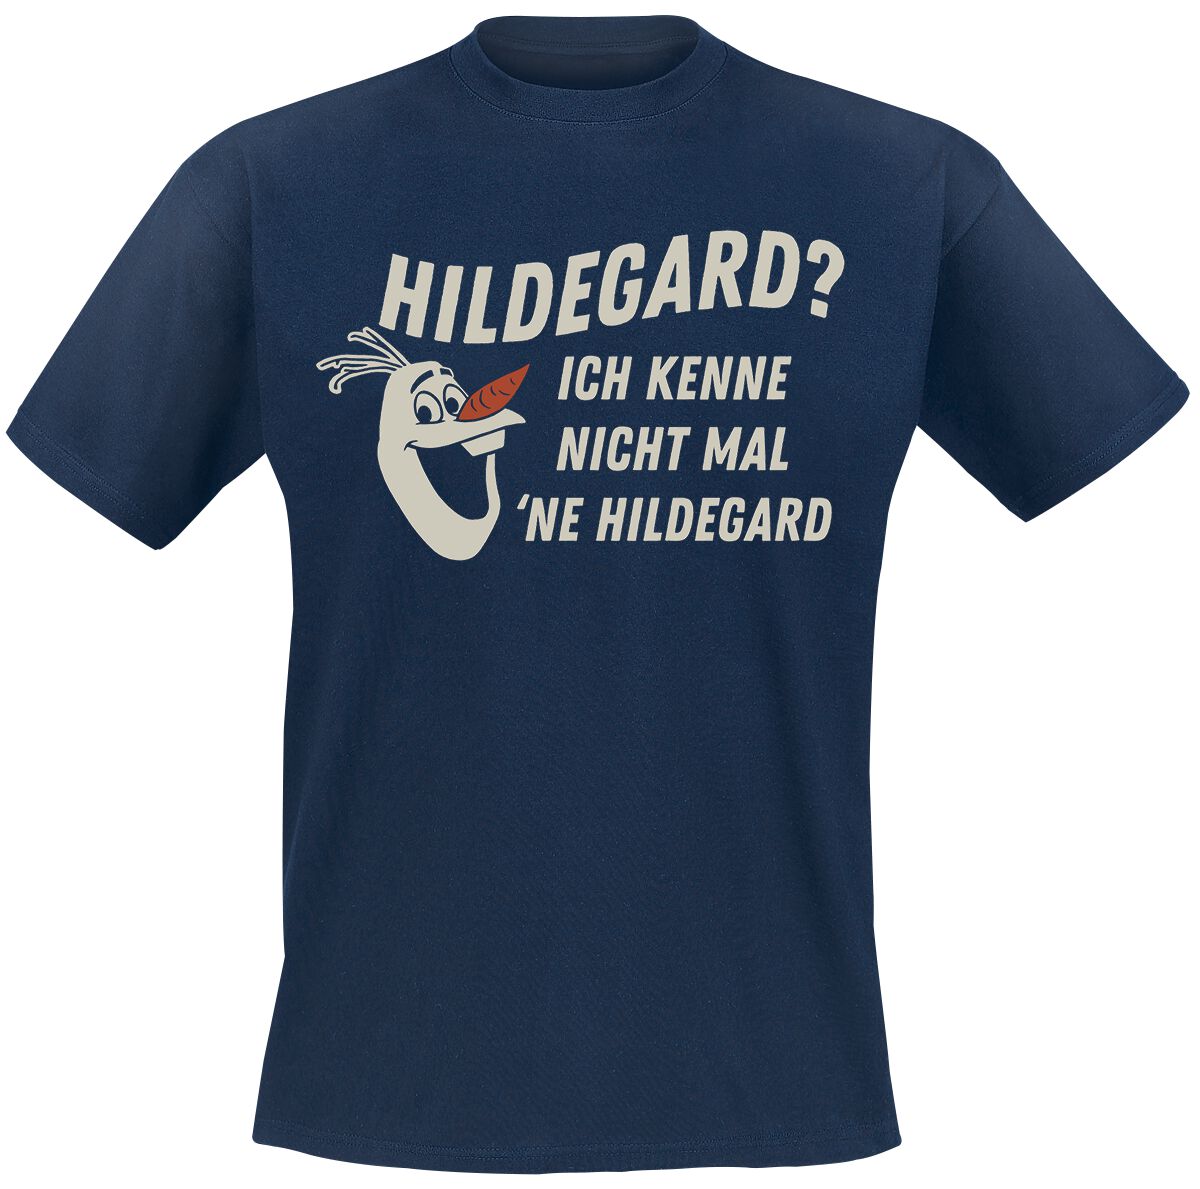 Die Eiskönigin - Disney T-Shirt - Hildegard - S bis XL - für Männer - Größe L - blau  - EMP exklusives Merchandise!